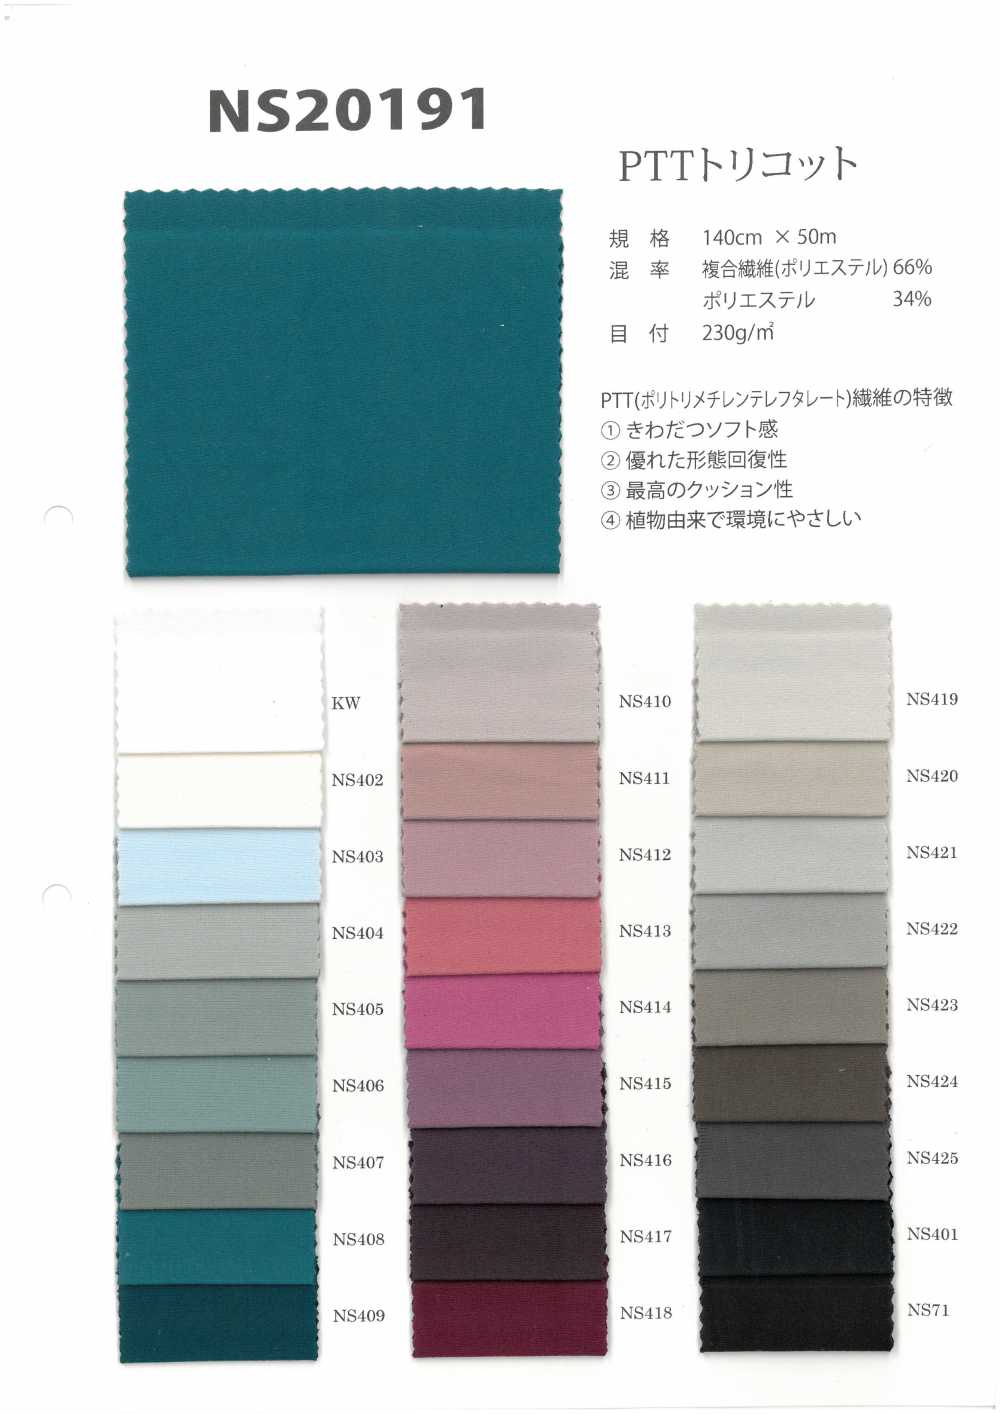 NS20191 Tricot PTT[Fabrication De Textile] Étirement Du Japon